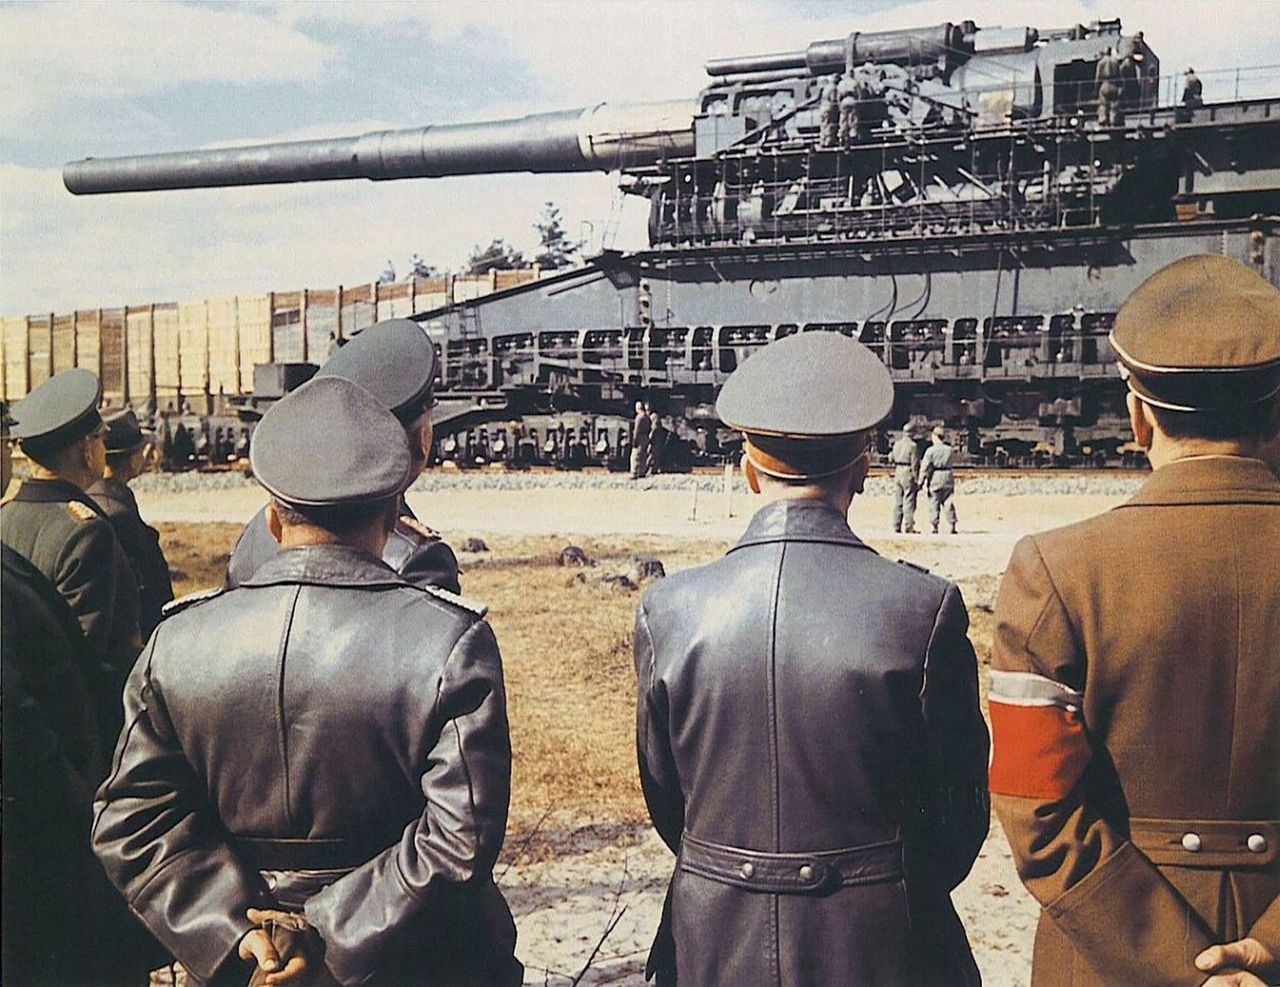 Niezwykła broń. 80 cm Kanone 5 Gustav - największe działo kolejowe świata